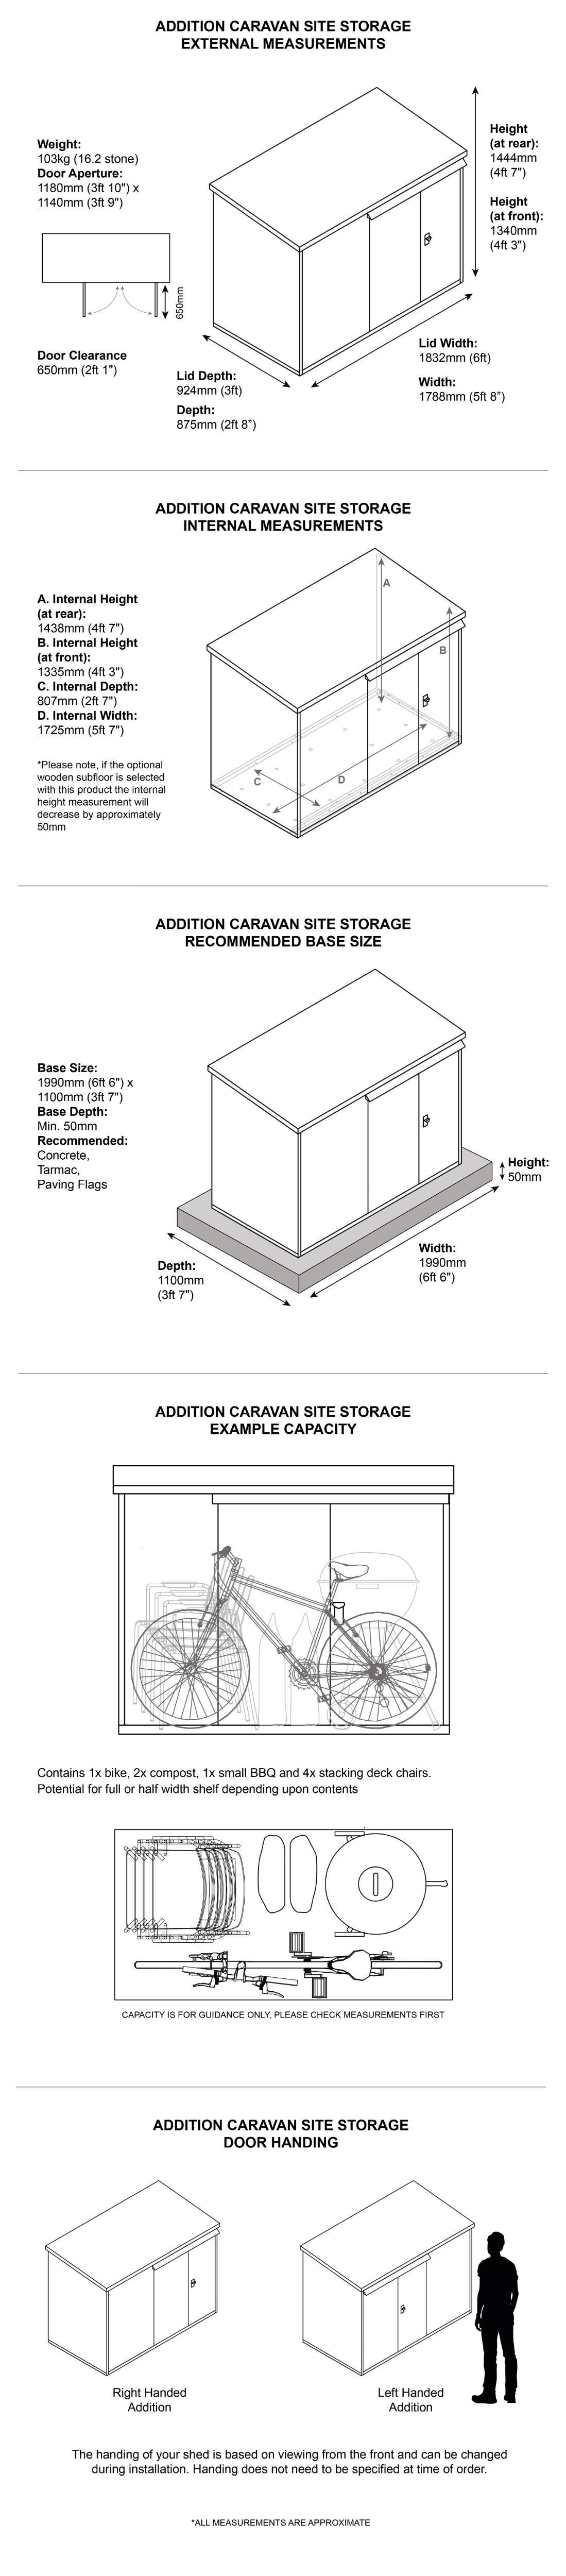 Addition outdoor storage box